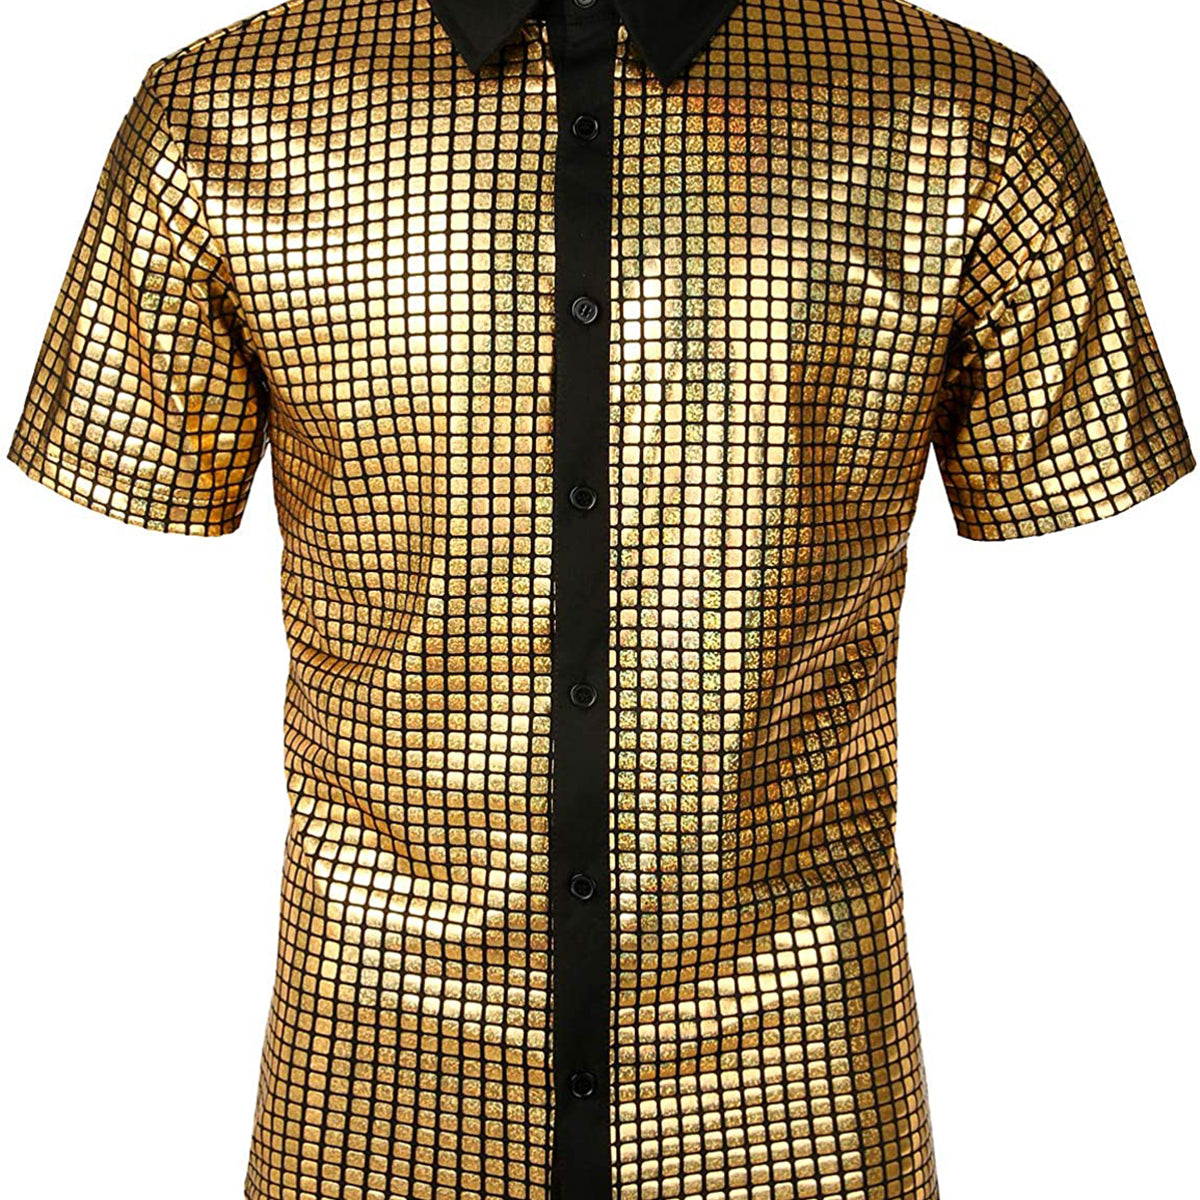 Men's Metallic Silver Shiny 70s Disco Party Silver Golden Button Up Short Sleeve Shirt